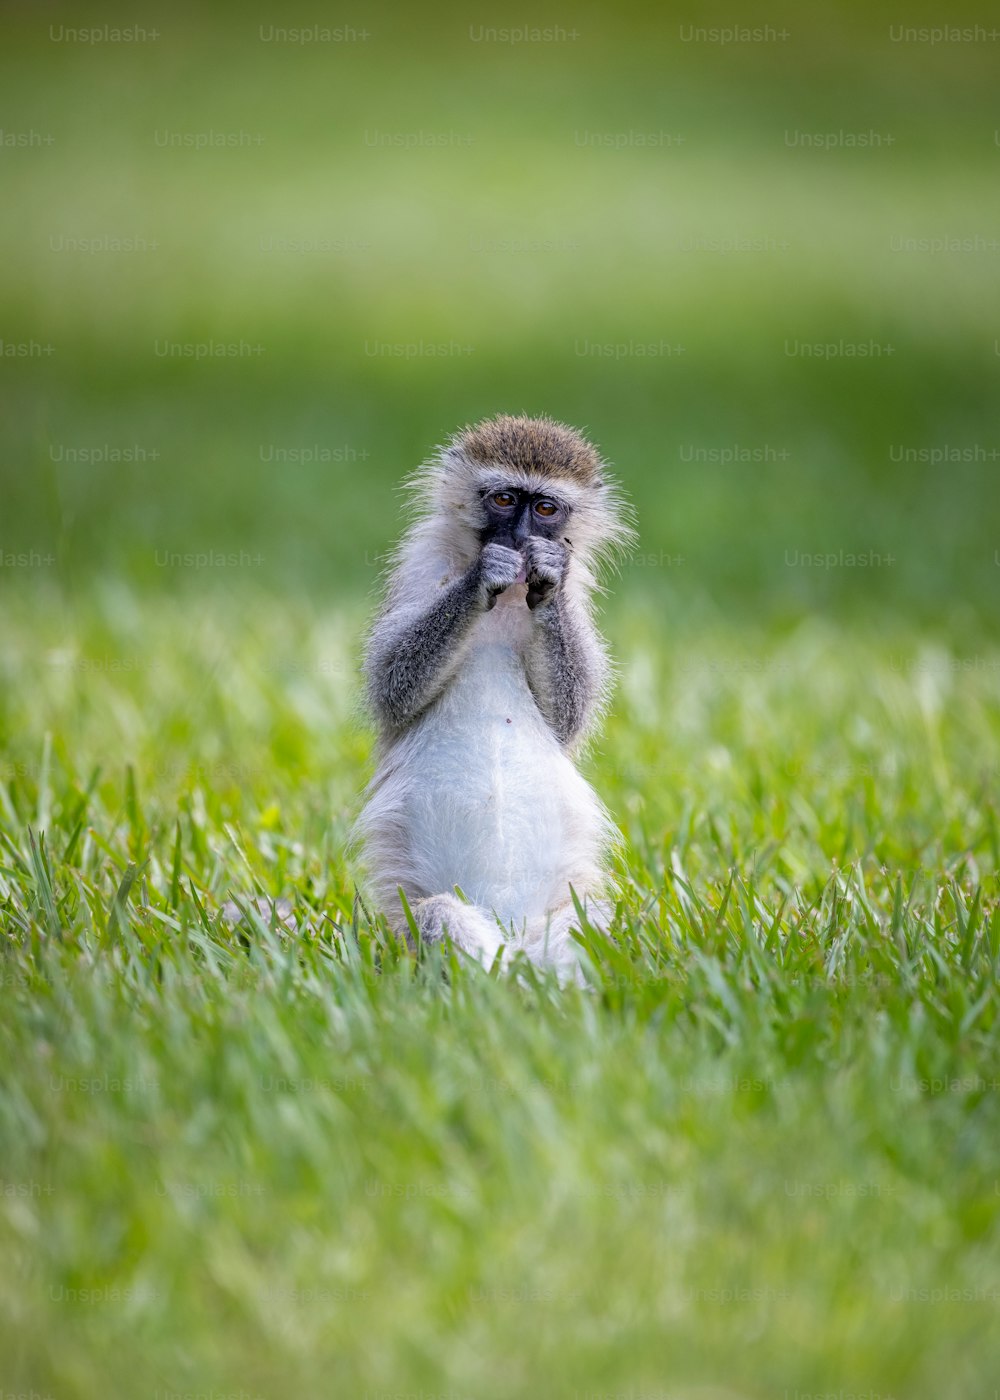 입을 벌리고 풀밭에 앉아 있는 원숭이